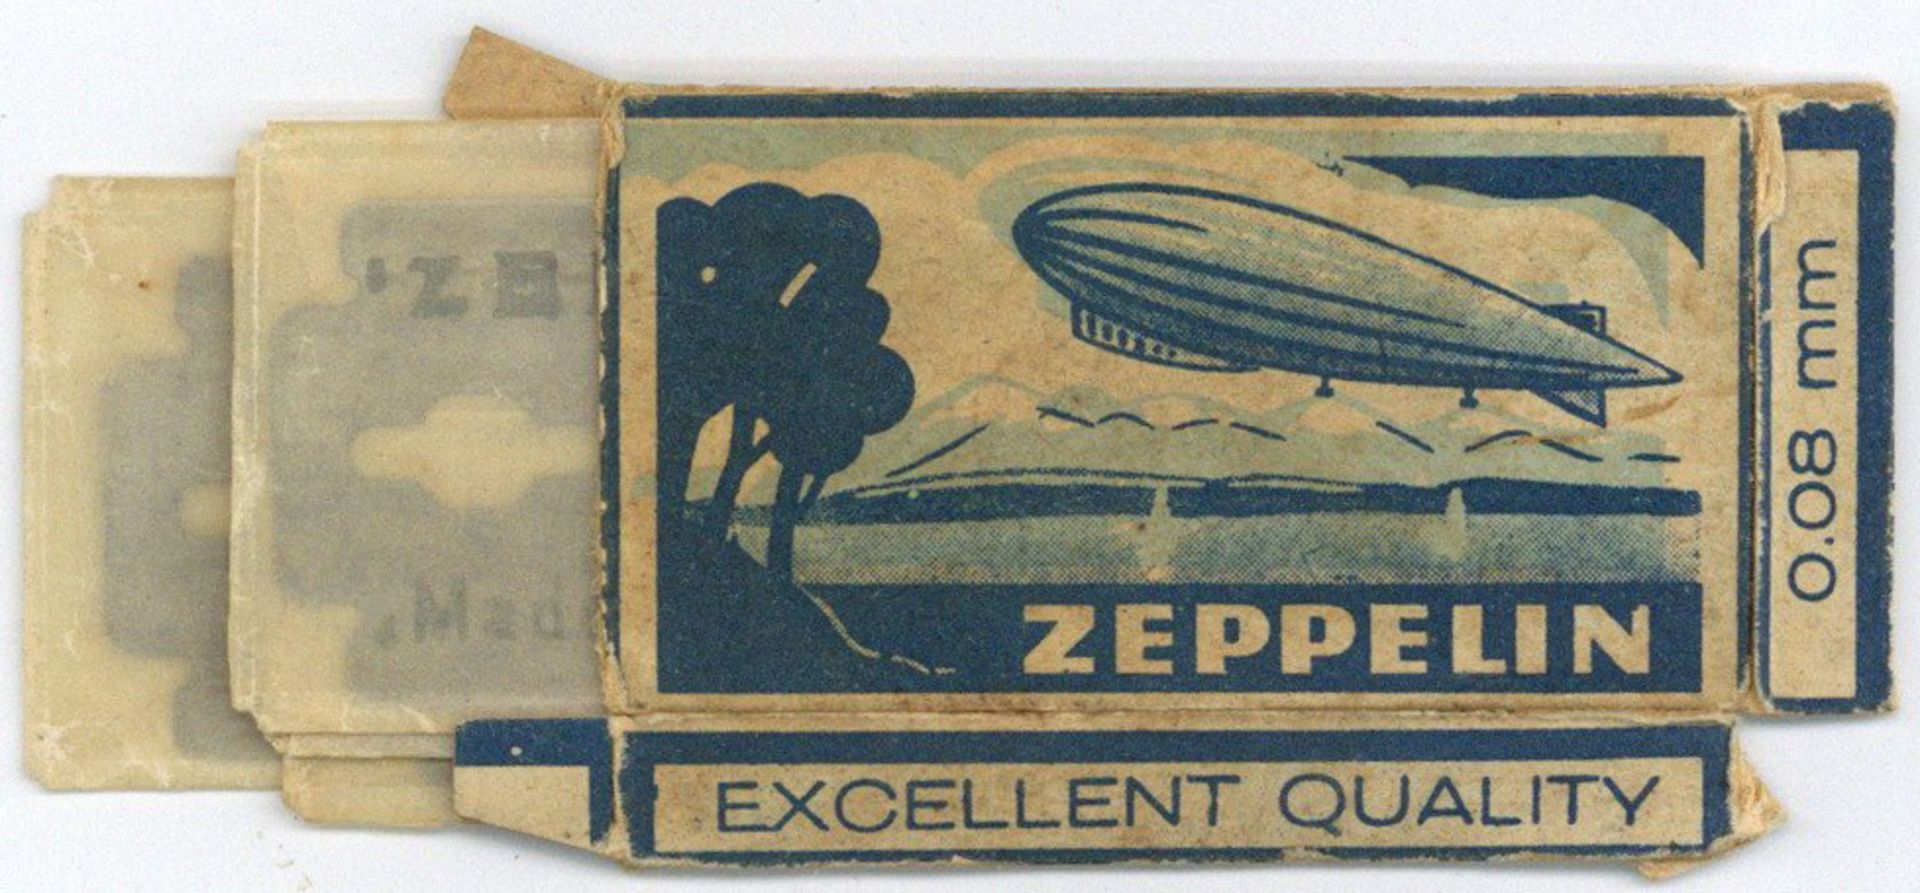 Zeppelin Rasierklingen 5 Stück in orig. Packung I-II